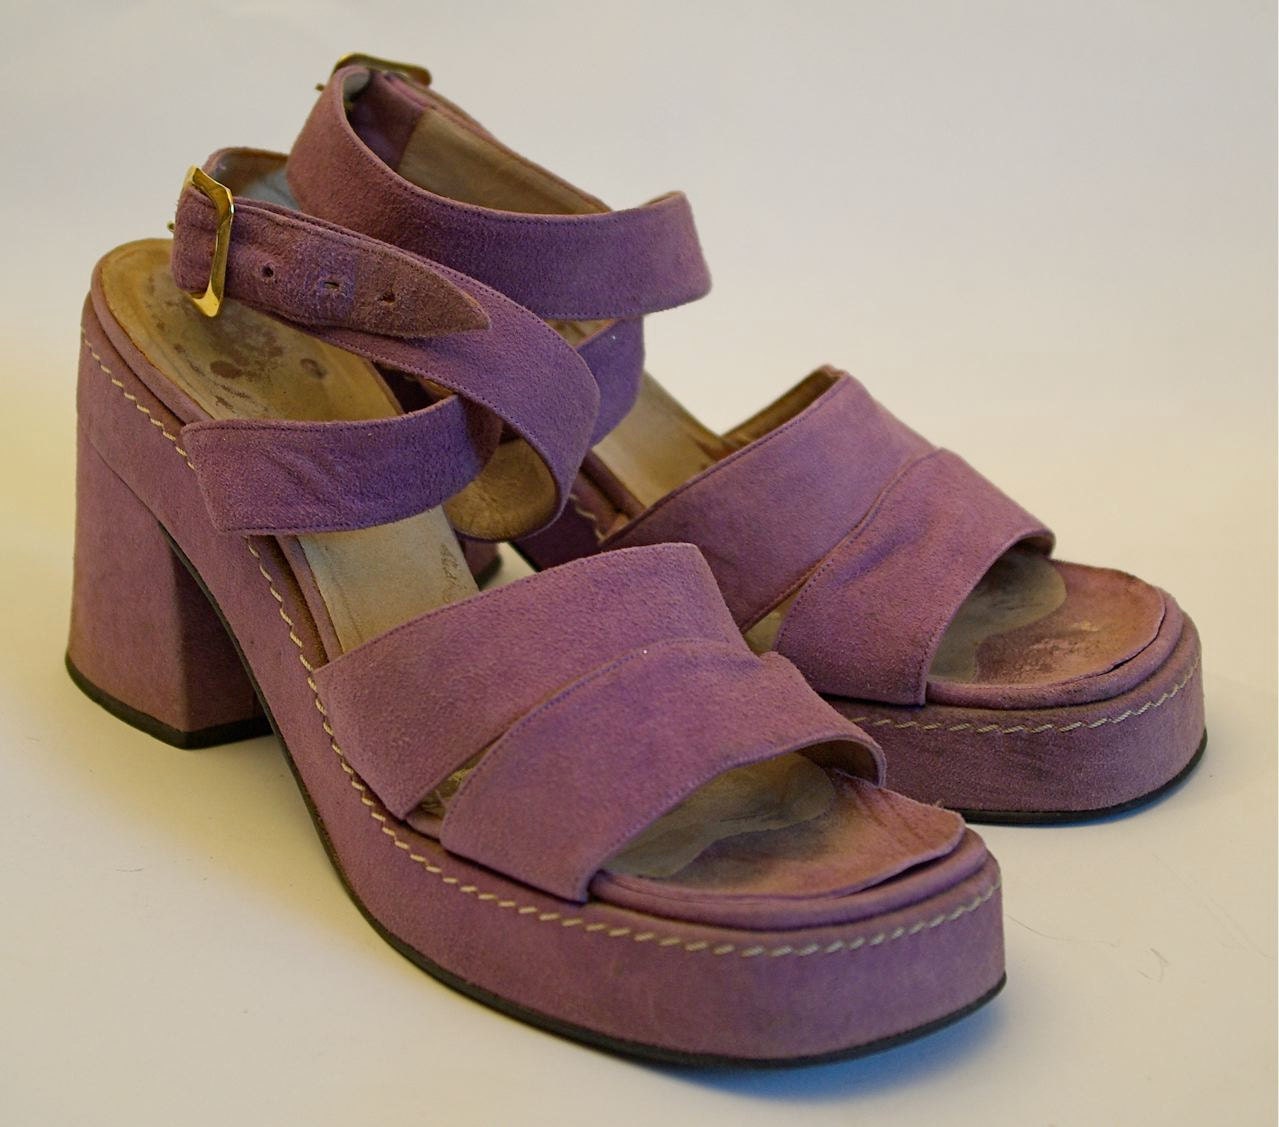 Mauve suede platform sandals, c. early 1970s - kickshaw